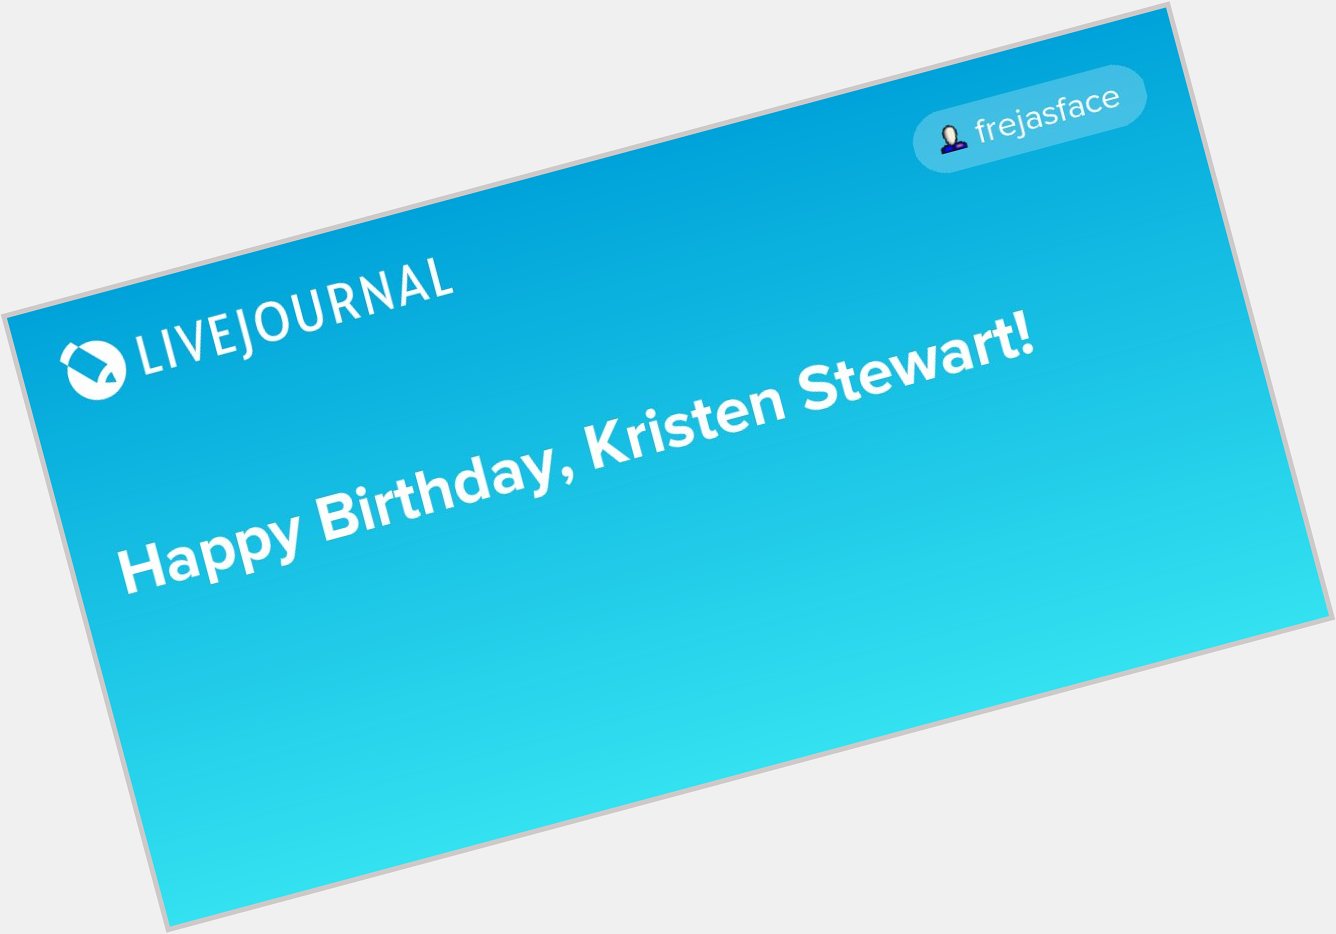 Happy Birthday, Kristen Stewart!  